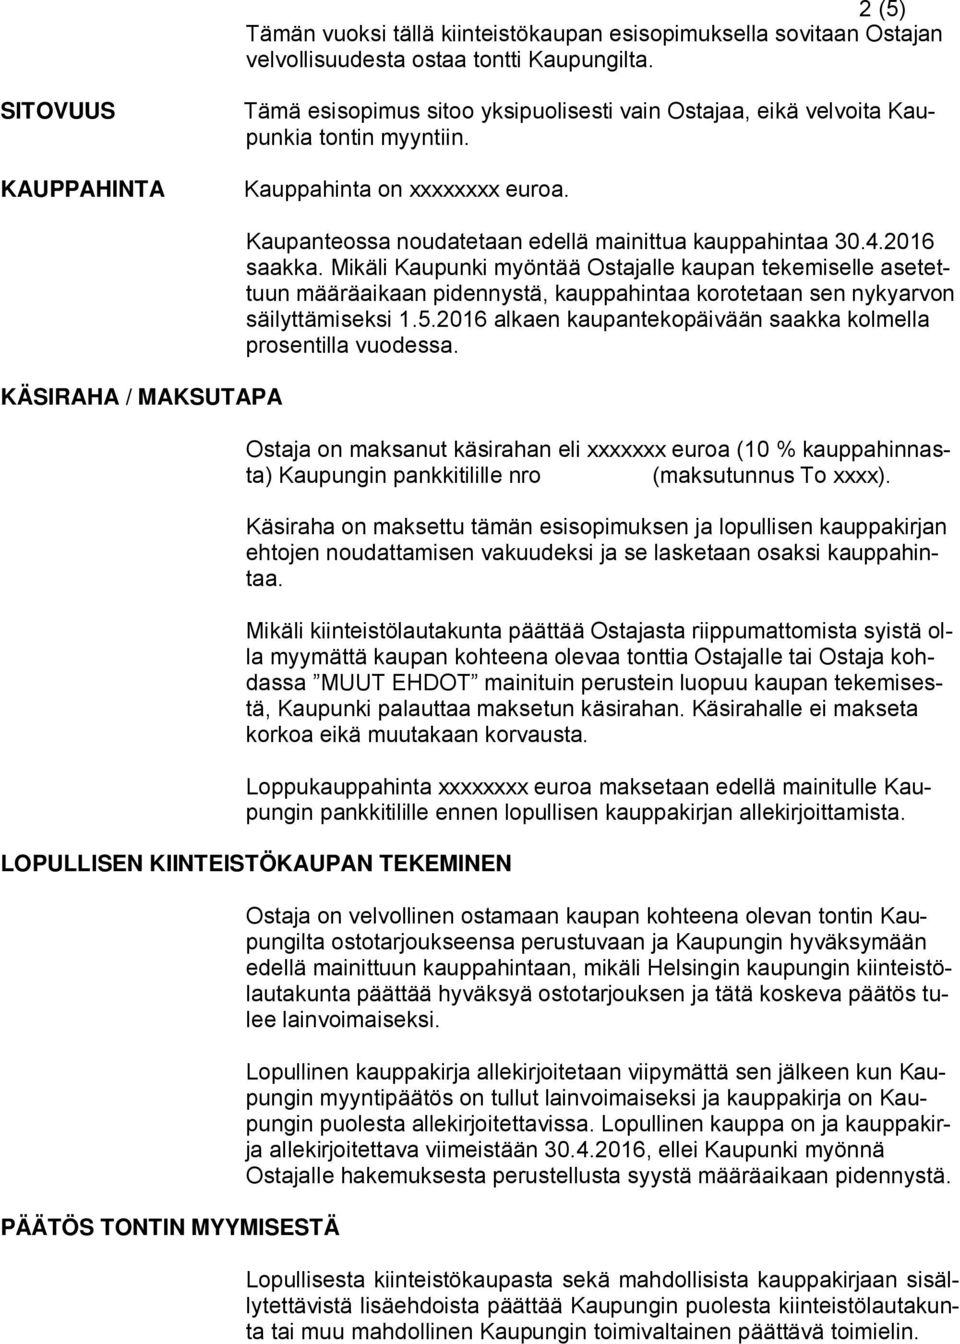 KÄSIRAHA / MAKSUTAPA Kaupanteossa noudatetaan edellä mainittua kauppahintaa 30.4.2016 saakka.